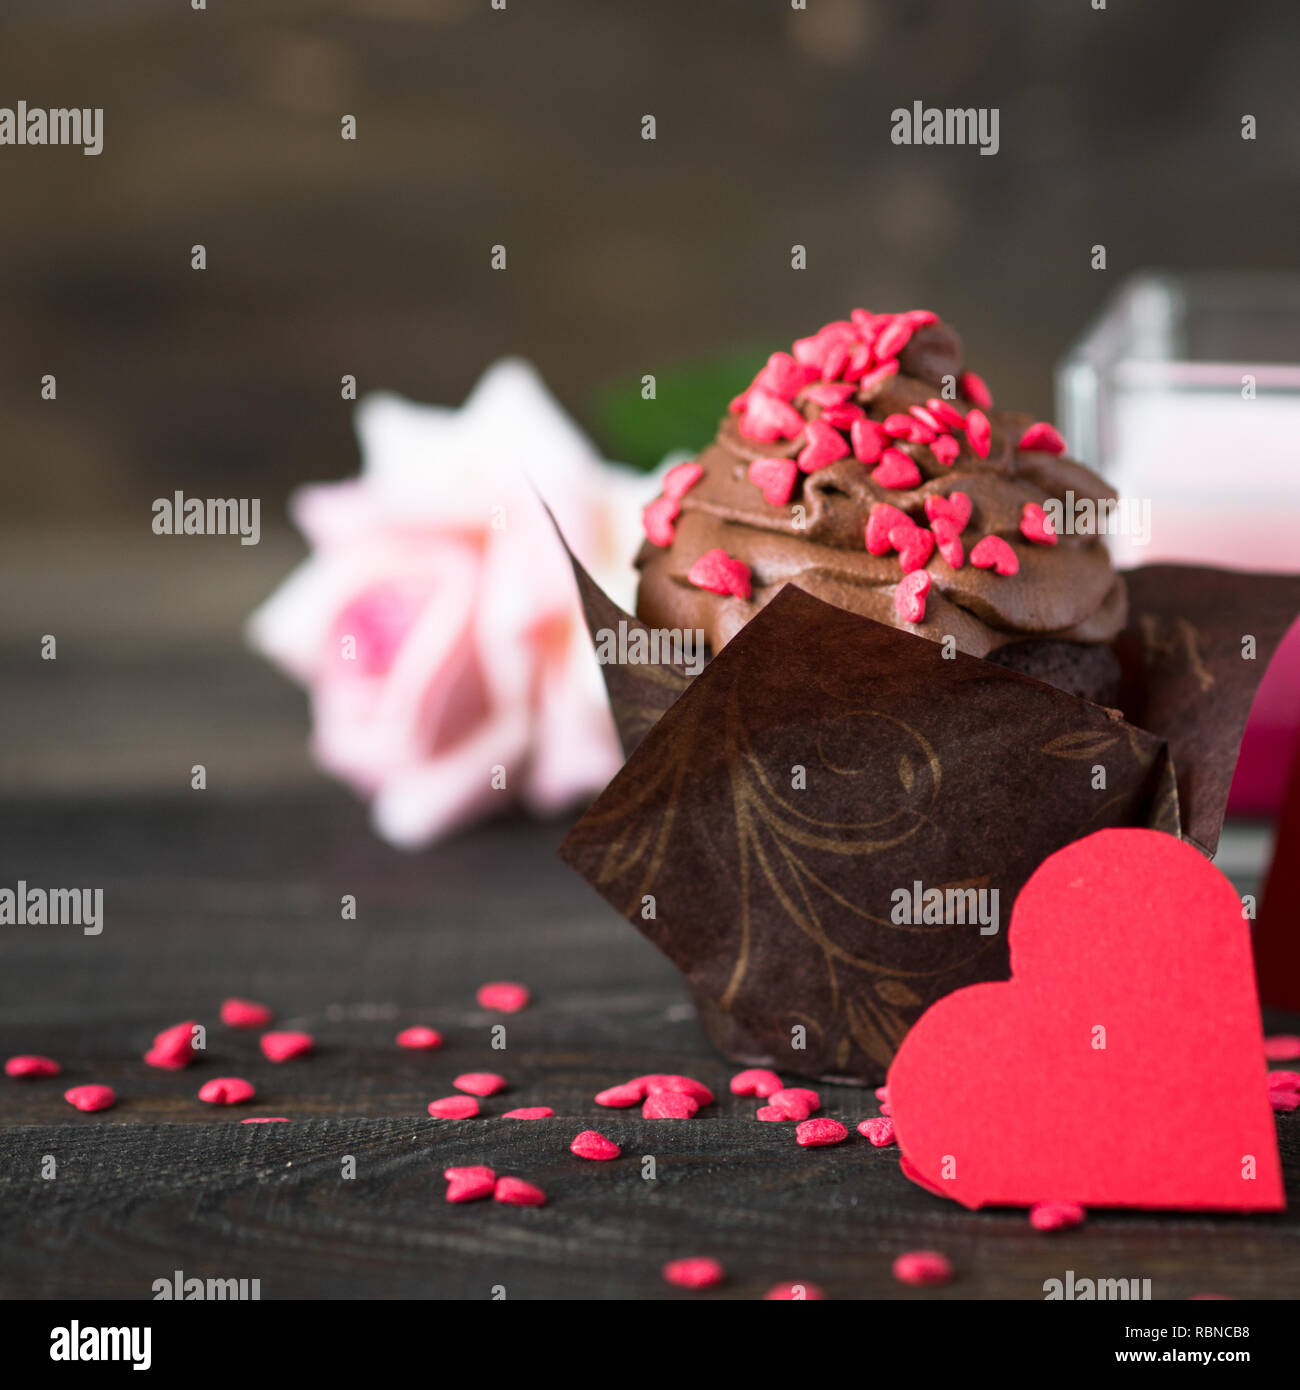 Petit gâteau au chocolat avec crème fouettée, parsemé de coeurs rouges. La cuisson des aliments sucrés pour la Saint-Valentin Banque D'Images